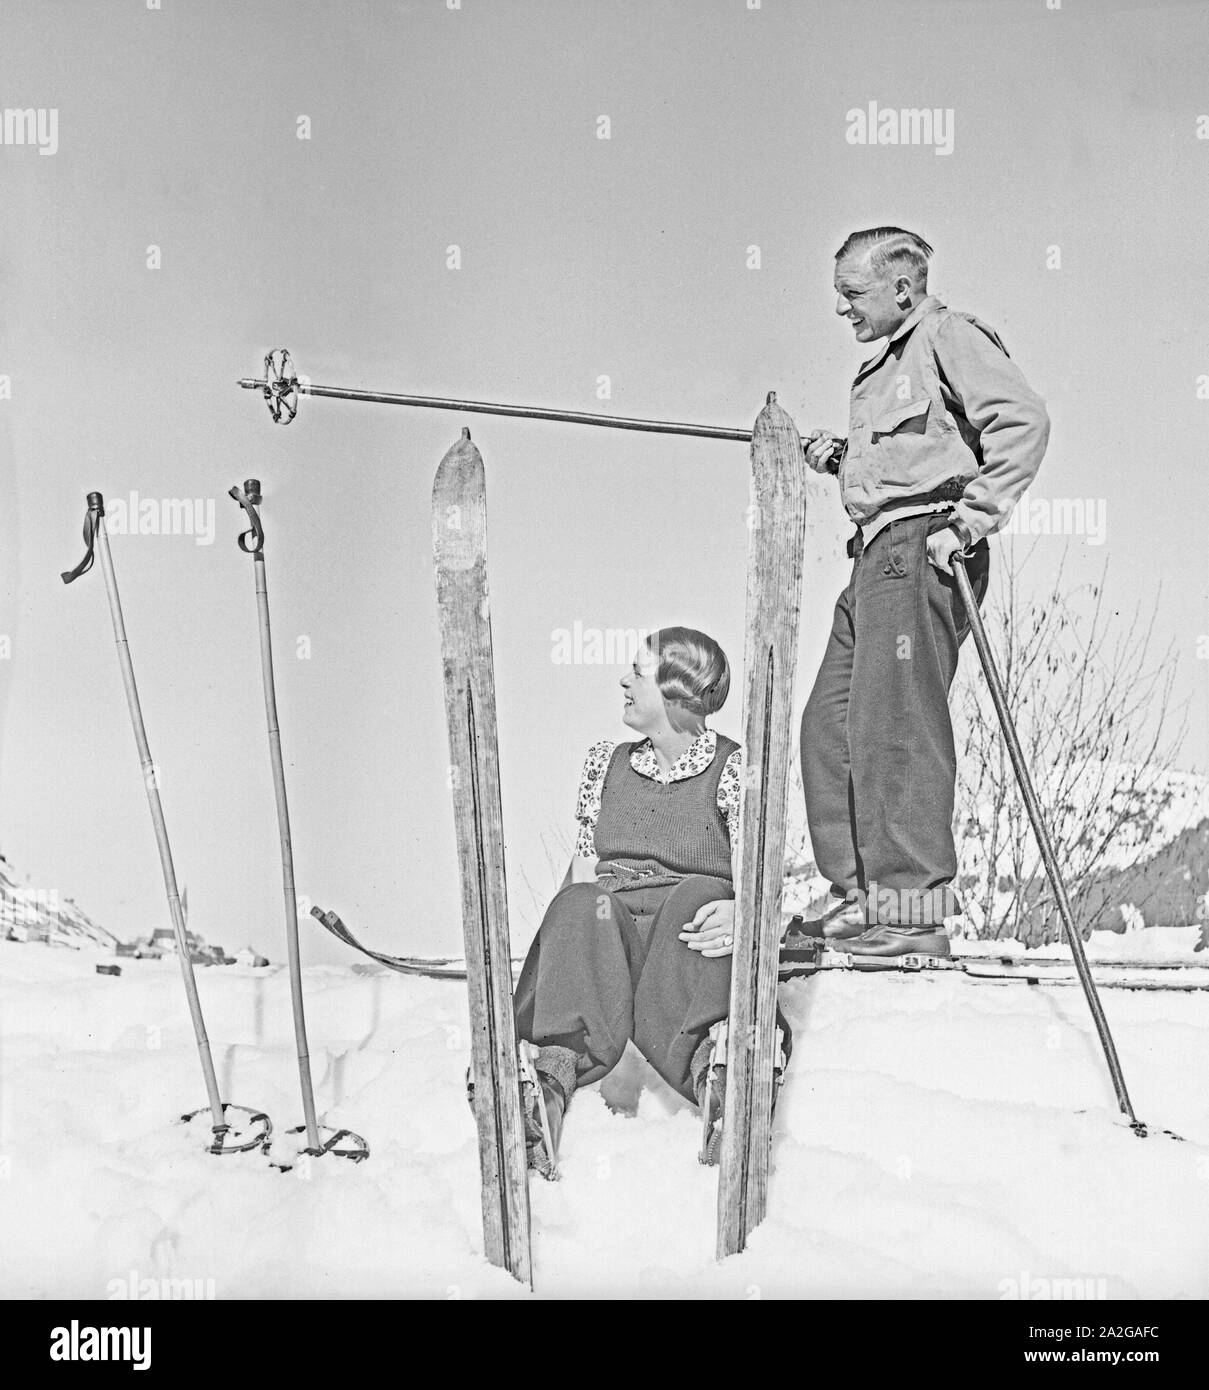 Ein Ausflug in Ein Skigebiet in Bayern, 1930er Jahre Deutsches Reich. Eine Reise in ein Skigebiet in Bayern, Deutschland der 1930er Jahre. Stockfoto